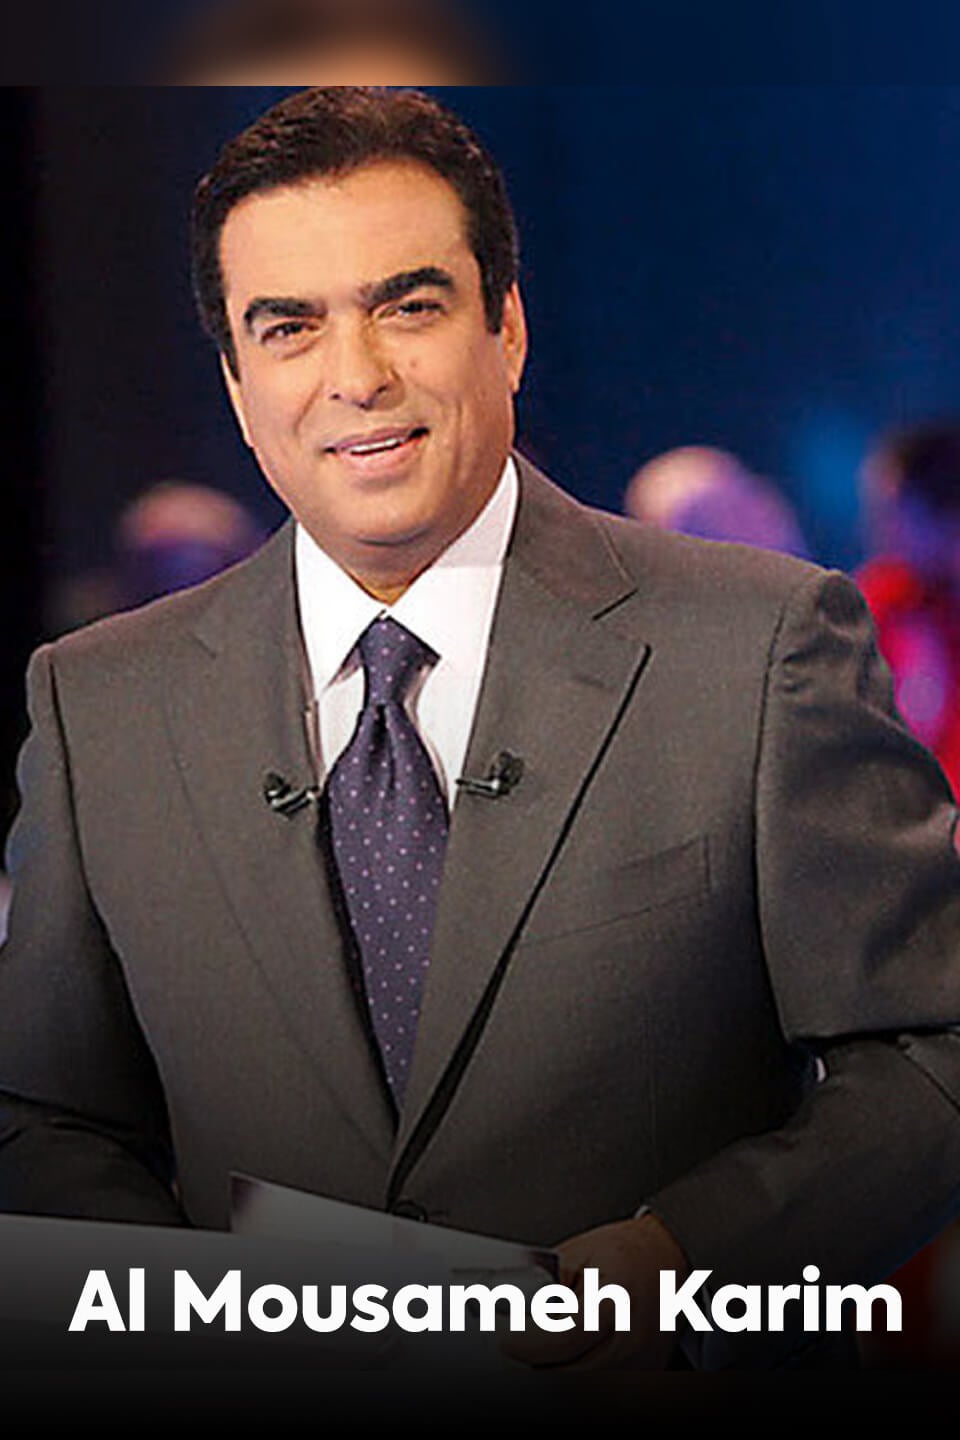 TV ratings for Al Mousameh Karim (المسامح كريم) in Argentina. OSN TV series